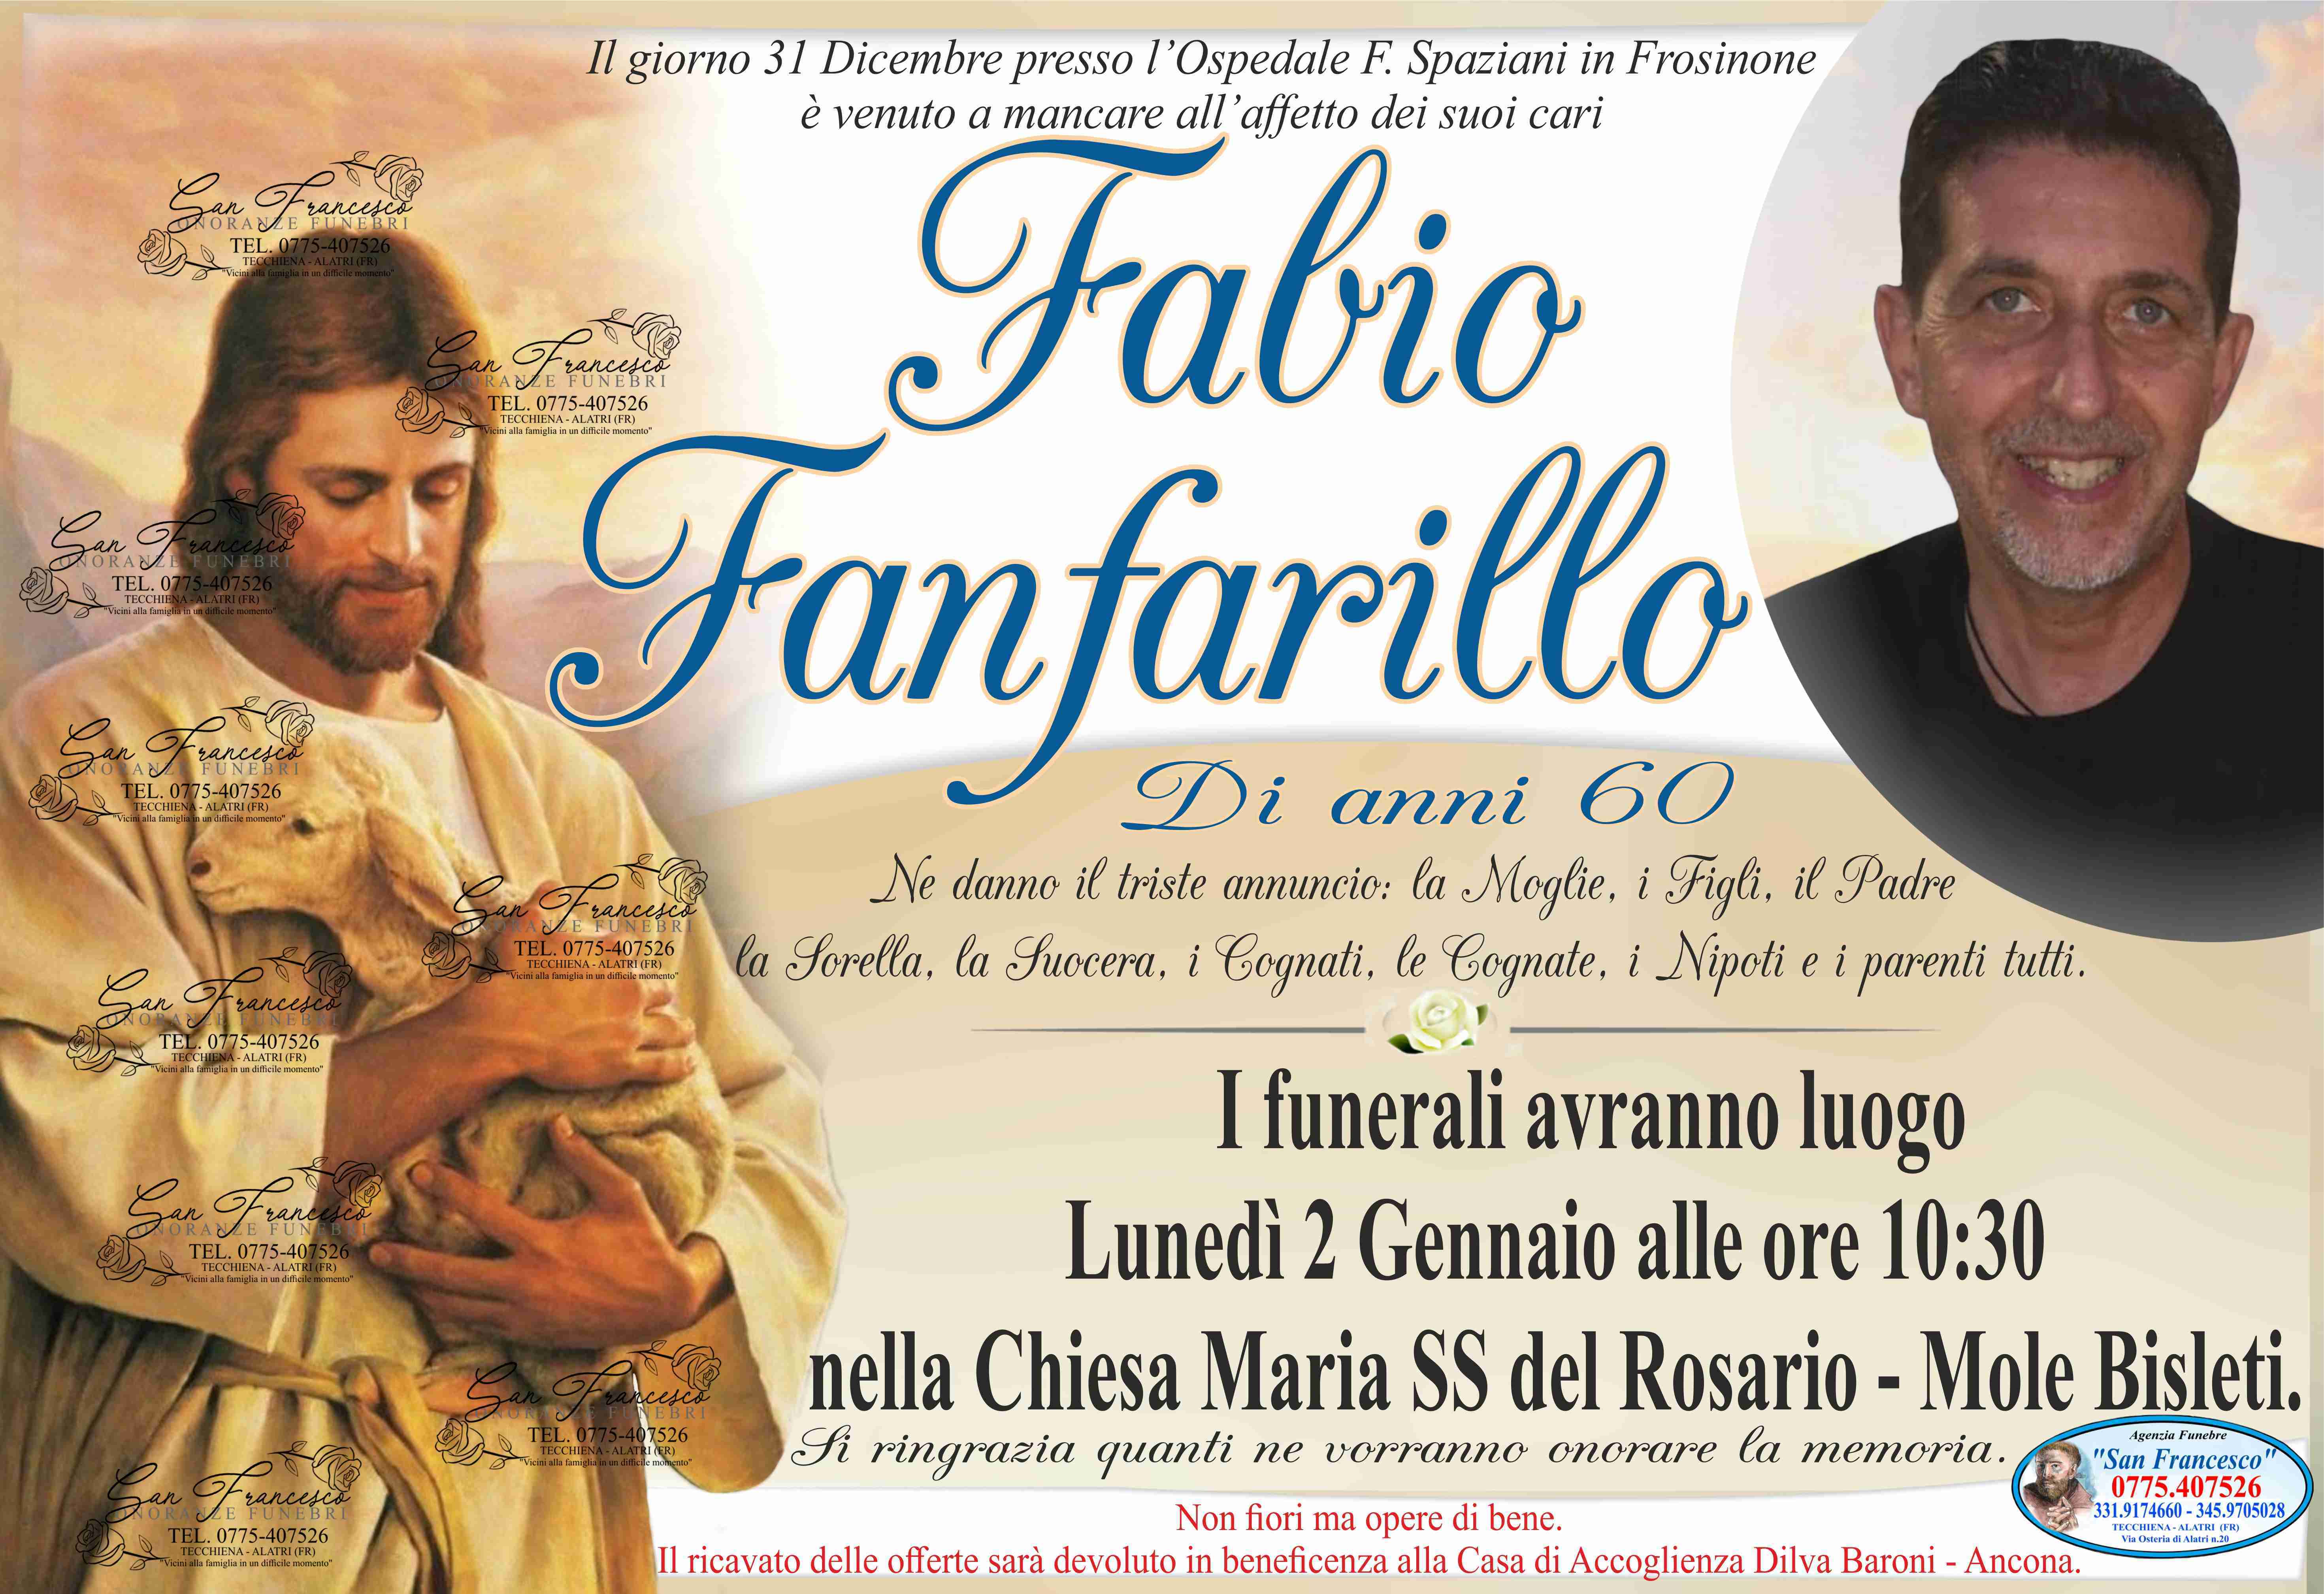 Fabio Fanfarillo